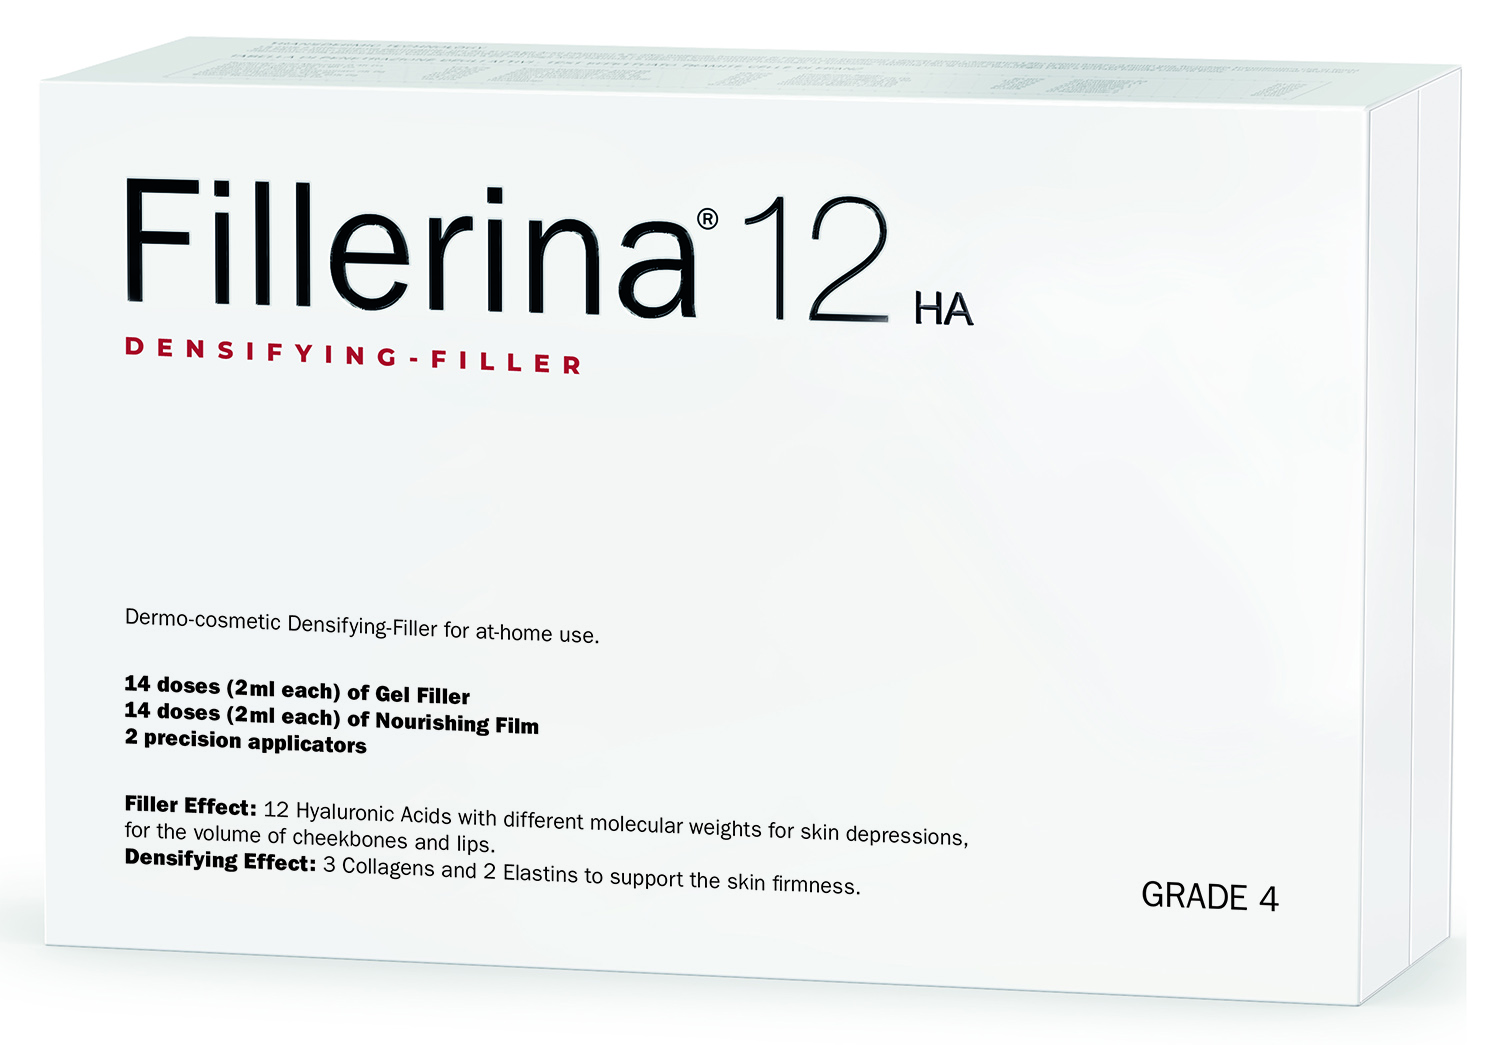 дермо косметический набор с укрепляющим эффектом intensive уровень 3 2 флакона х 30 мл Fillerina Дермо-косметический набор с укрепляющим эффектом Intensive уровень 4, 2 флакона х 30 мл (Fillerina, 12 HA Densifying-Filler)